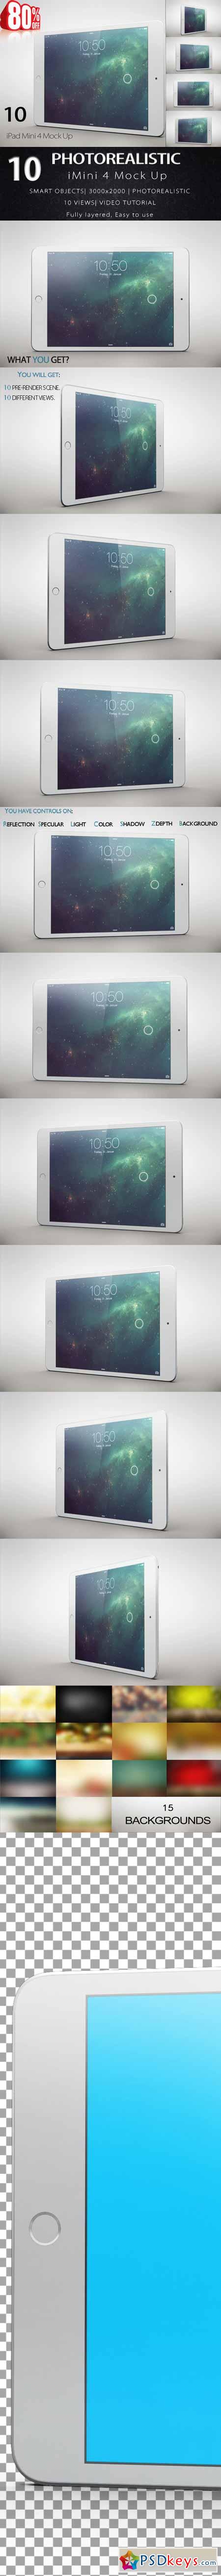 Bundle iPad Mini 4 Tablet Mock Up 586504